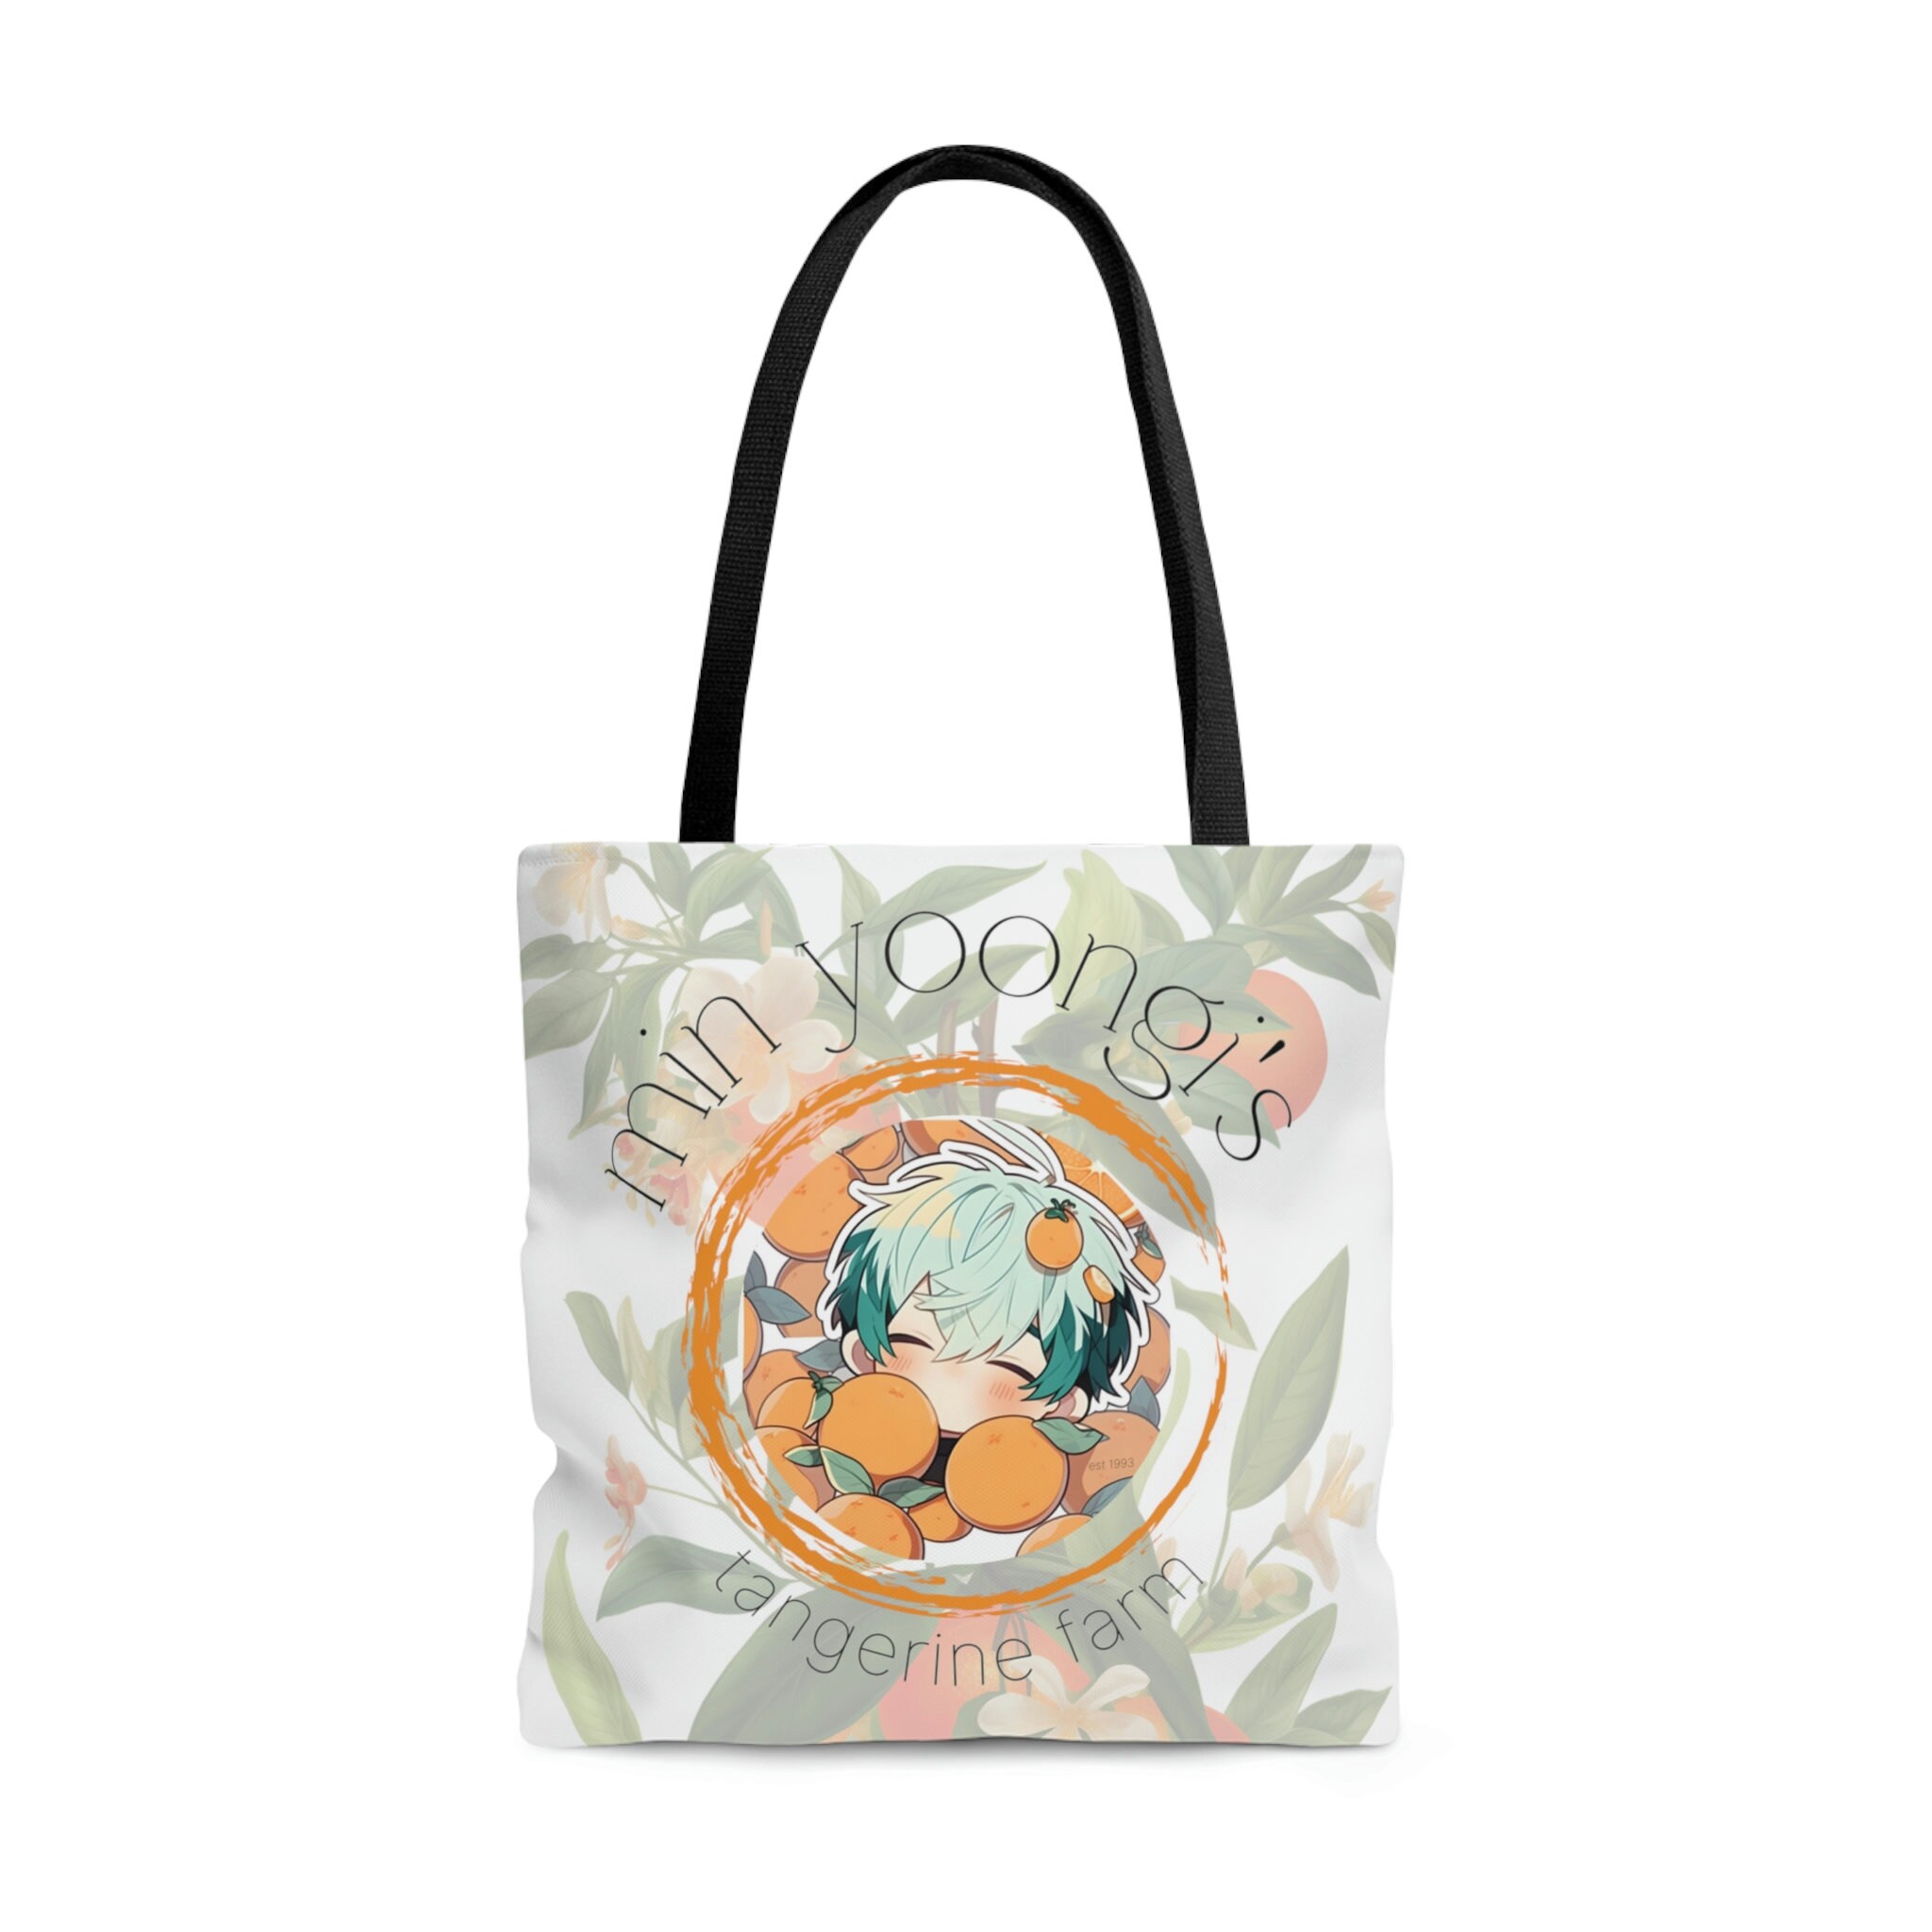 Monkey Trapeze Trellis Tote Bag, Tangerine